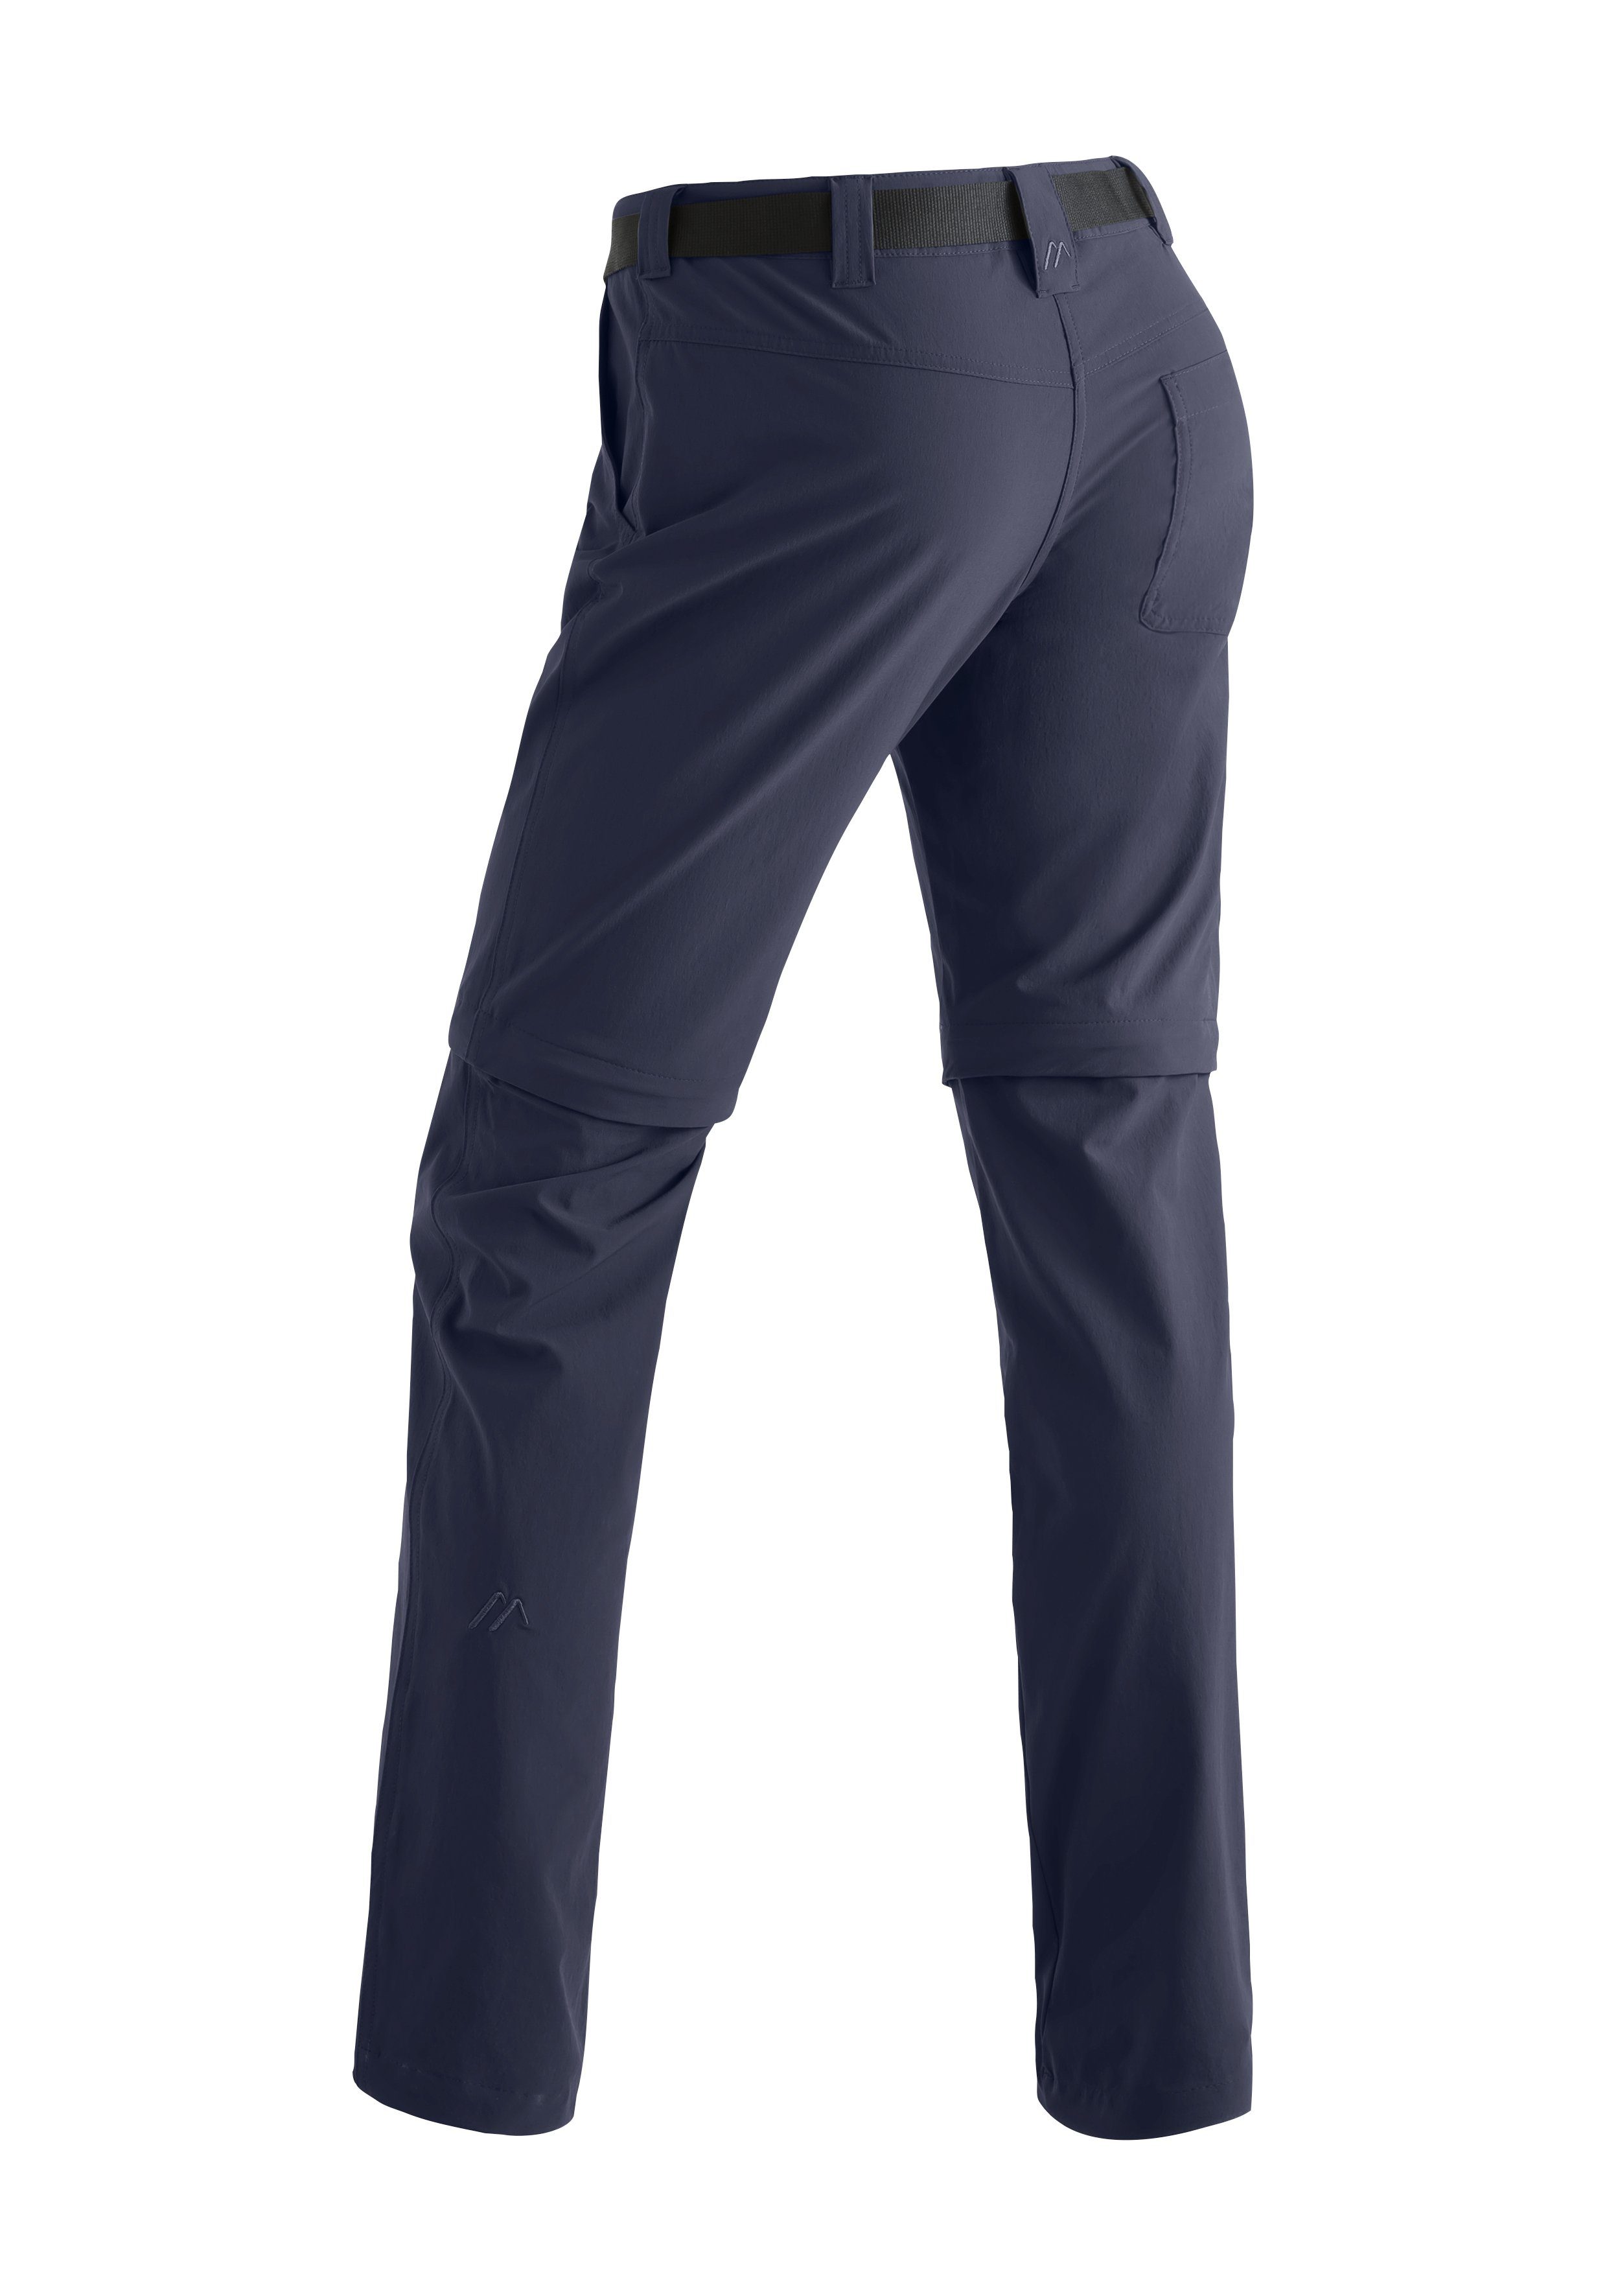 Maier Sports Funktionshose zip slim zipp-off Wanderhose, blau atmungsaktive Inara Damen Outdoor-Hose